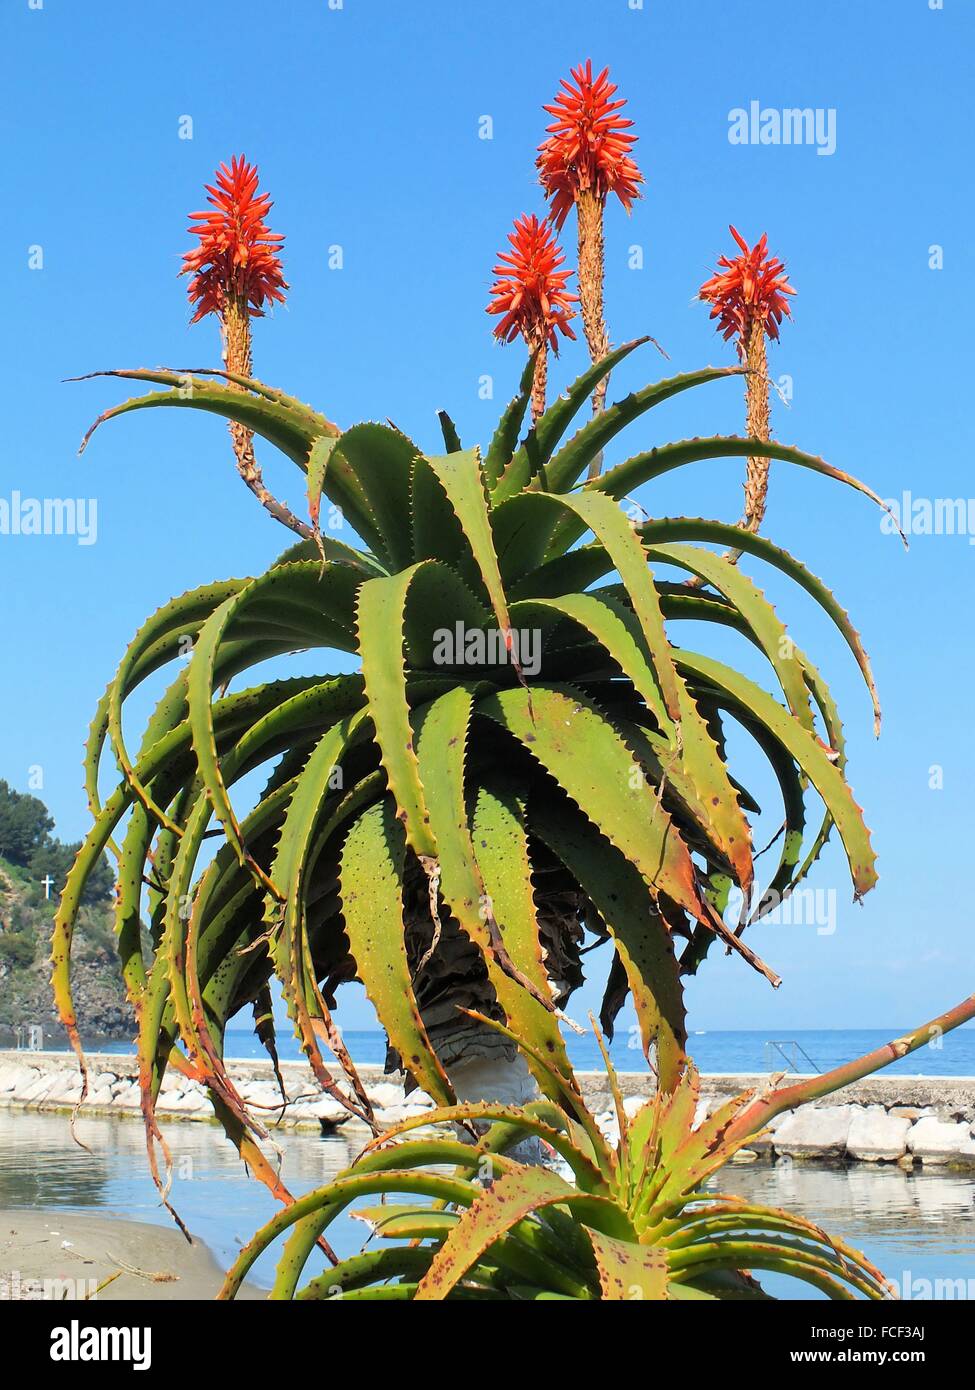 At the port of Laco Ameno the Aloe Vera arborescens also blooms in February 2015 Stock Photo